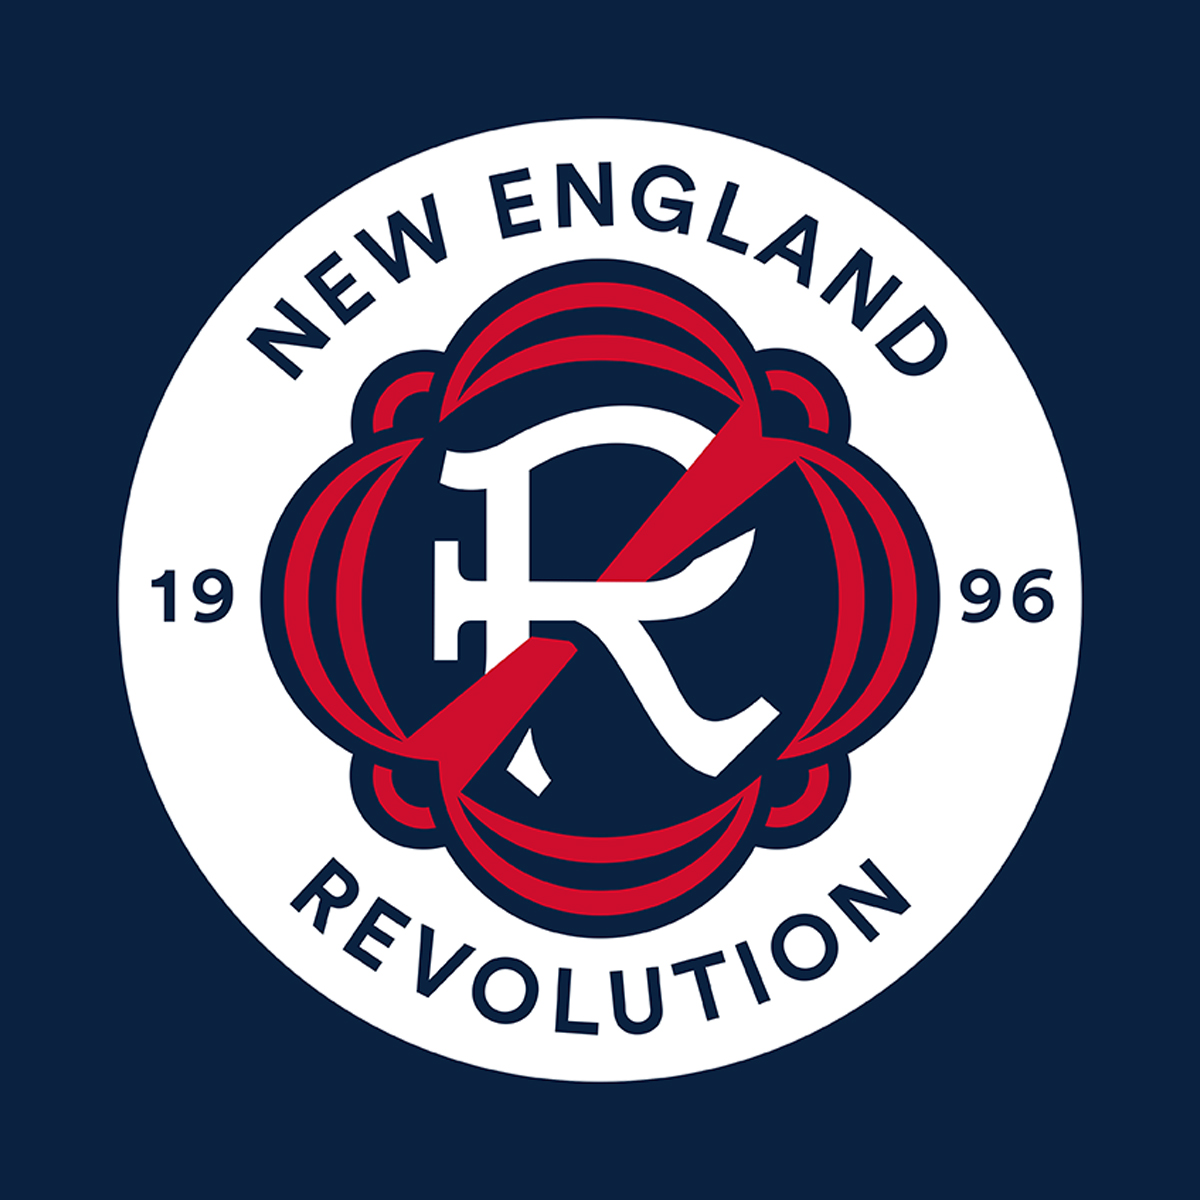 New England Revolution vs Austin FC amanhã. O que esperar